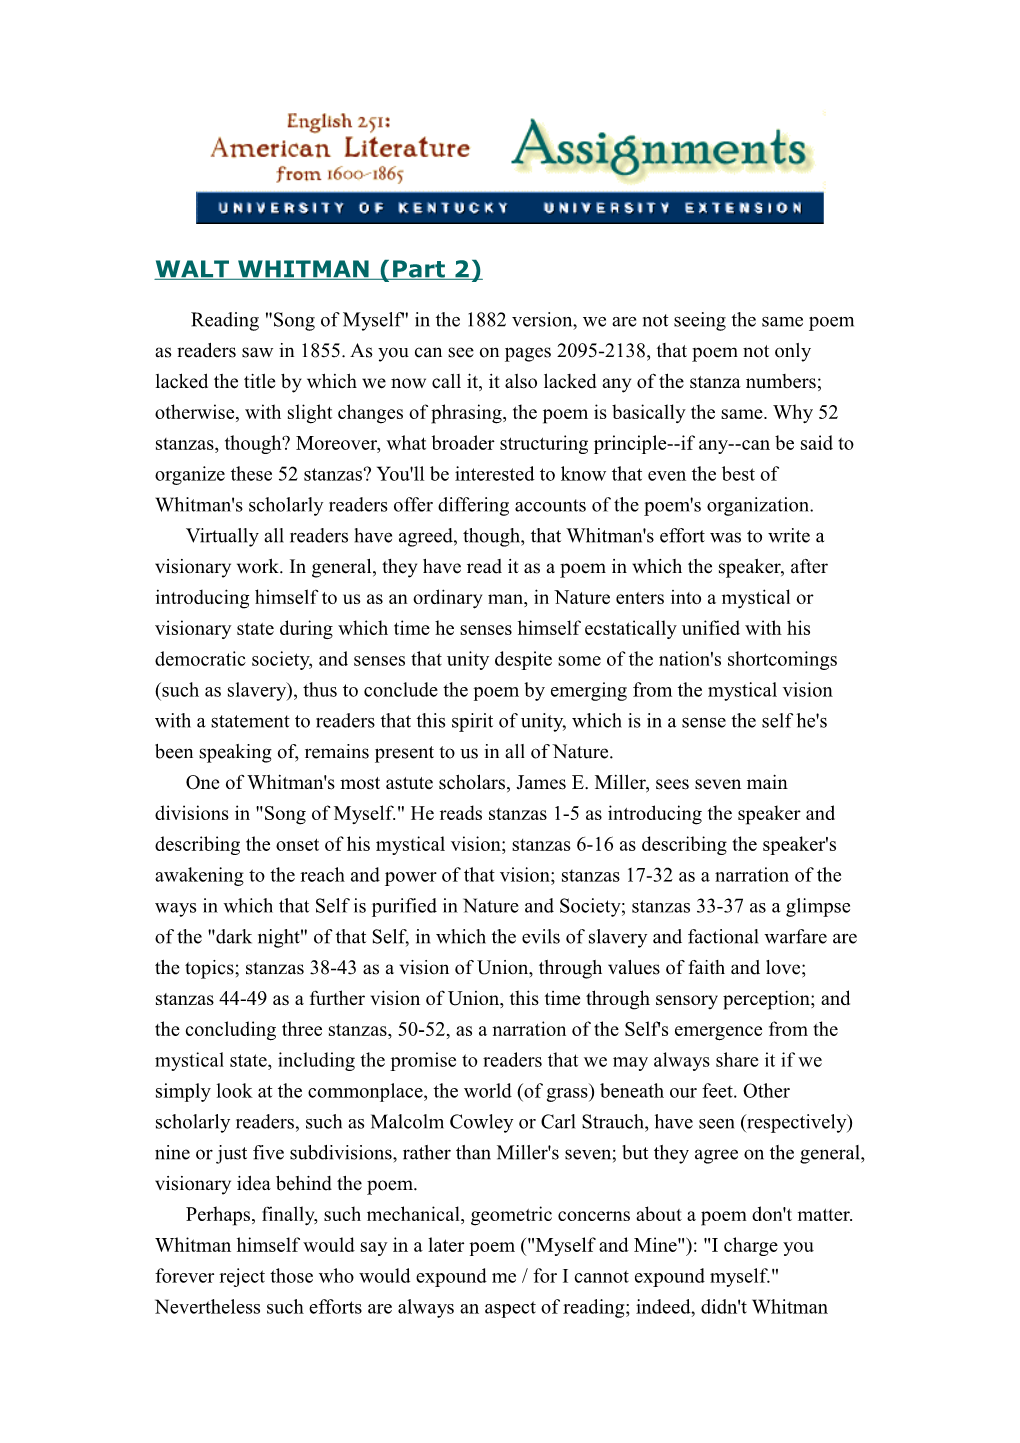 WALT WHITMAN (Part 2)